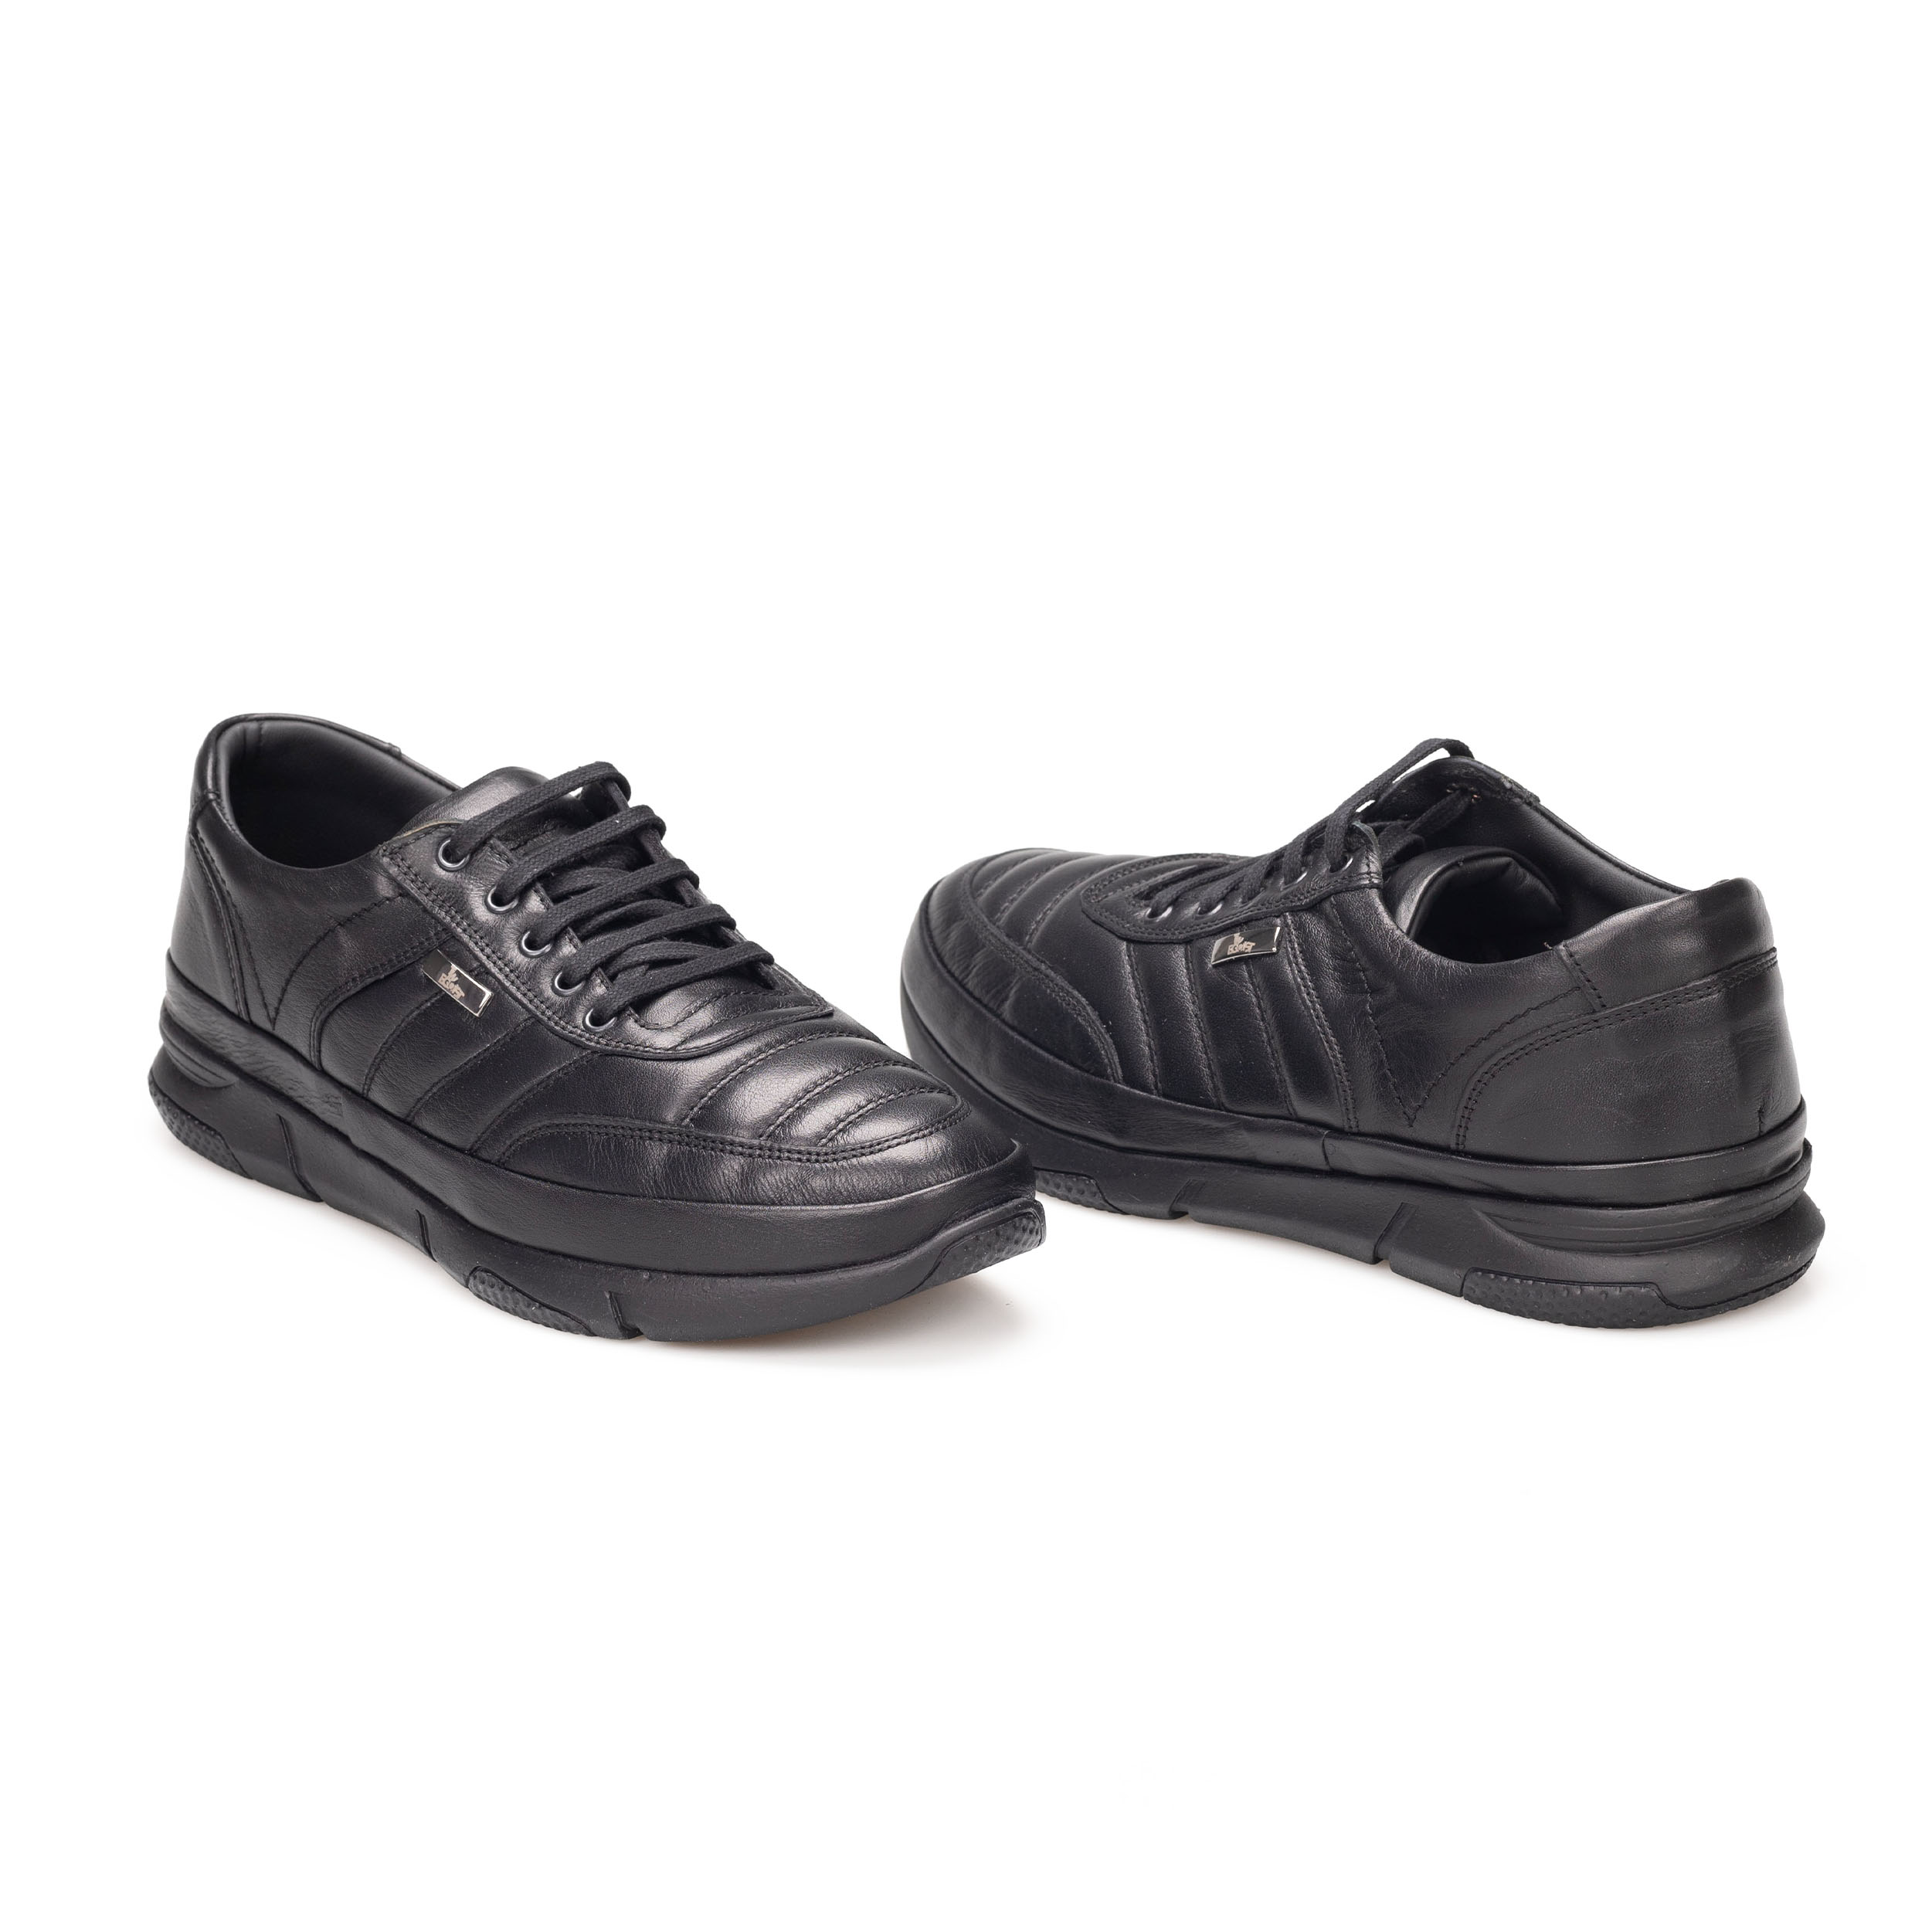 Erkek Hakiki Deri Kauçuk Taban Günlük Ayakkabı - Sneaker, Renk: Siyah, Beden: 40